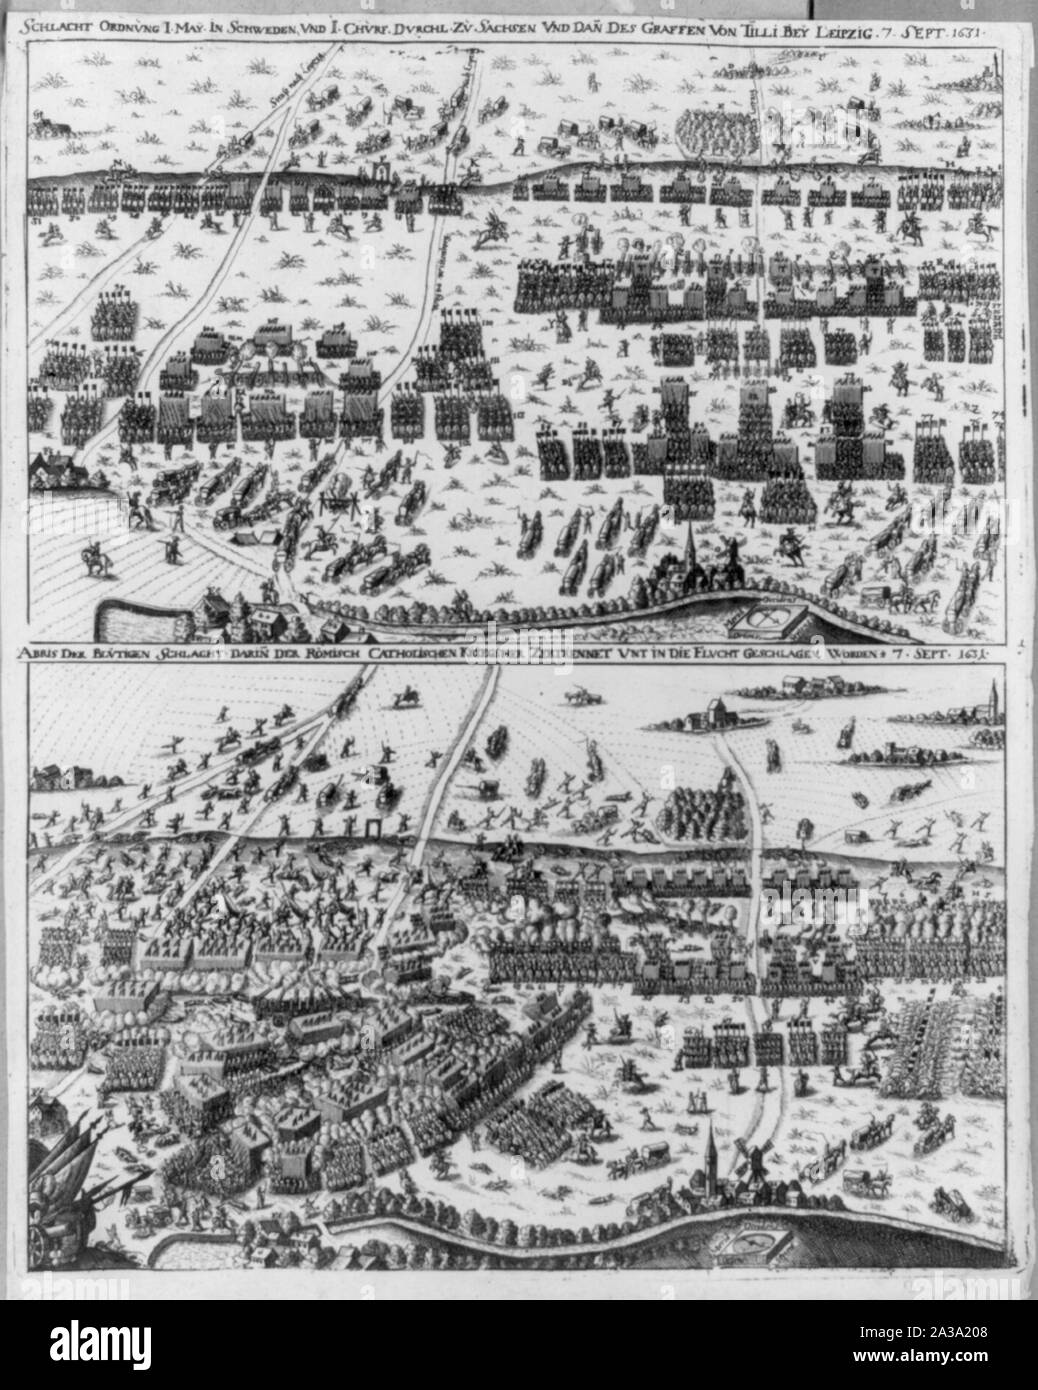 Schlacht Ordnvng I. May in Schweden vnd I. Chvrf. Dvrchl. Zu Sachsen vnd dan[n] es Graffen von Tilli bey Leipzig 7. Sept. 1631 Stock Photo